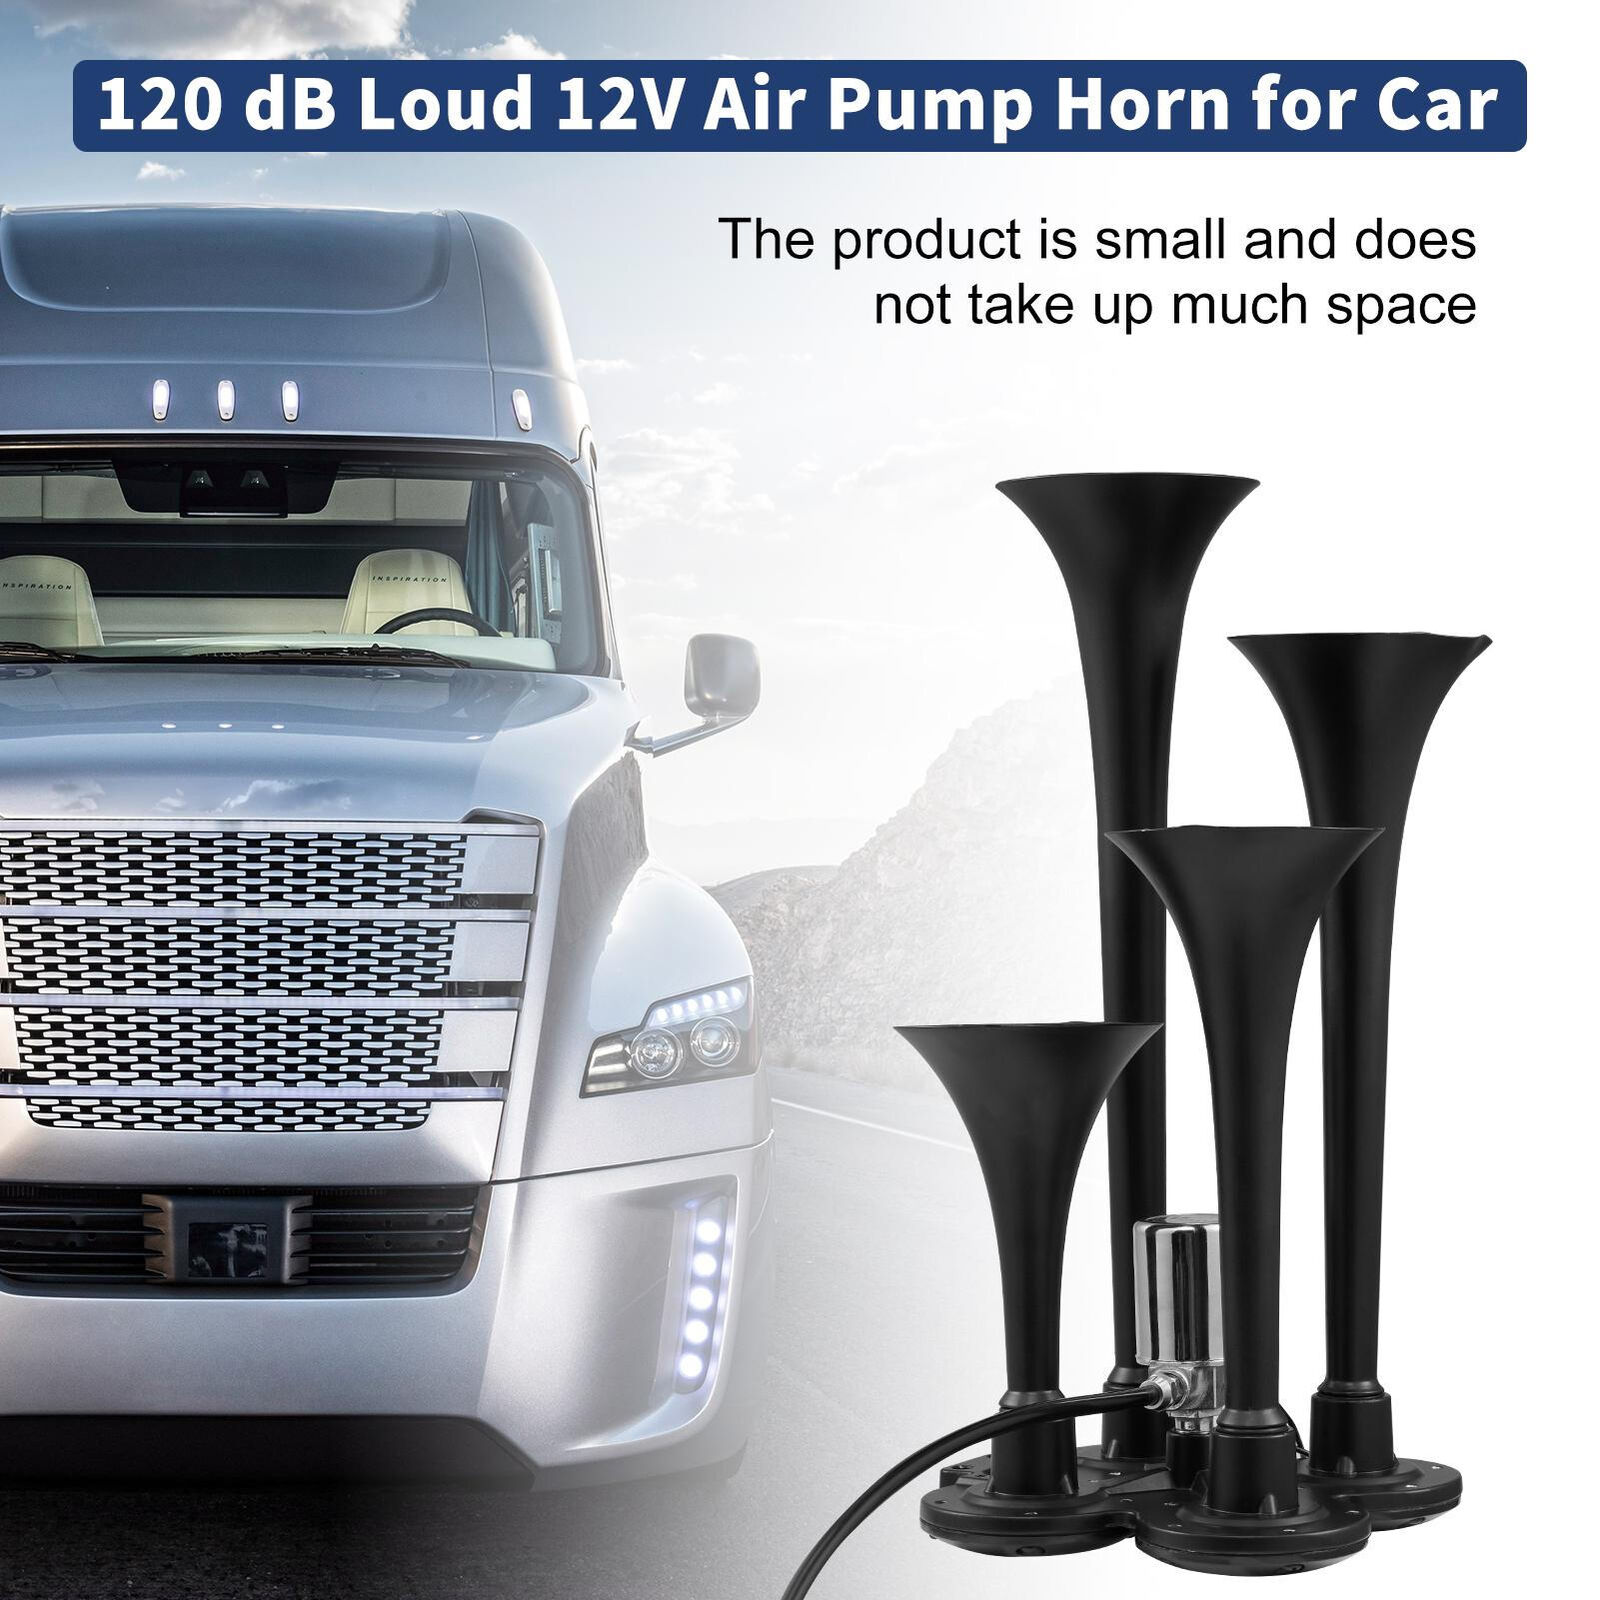 Car Air Horns 120 dB Loud 12V Air Pump Horn for Car Compact Vehicle brightly